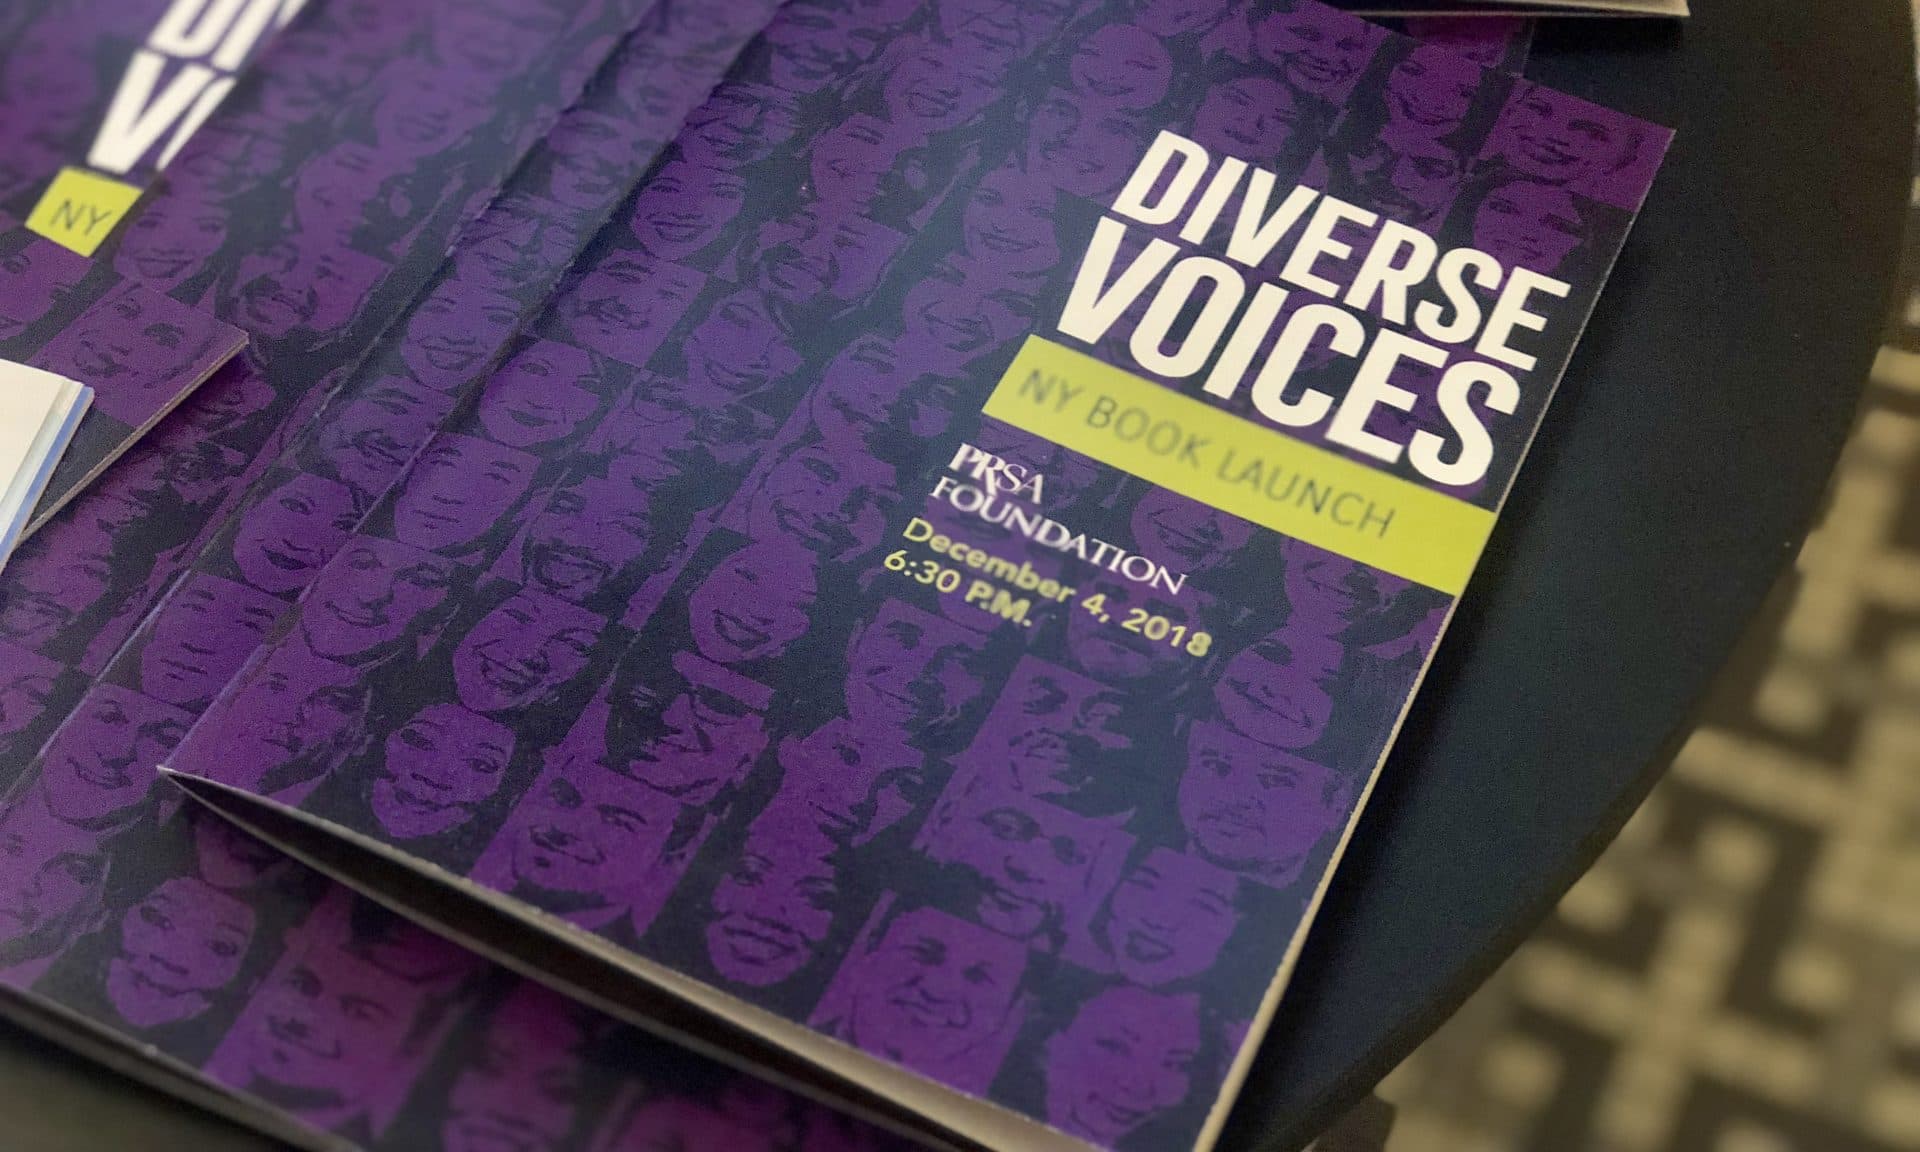 Diverse Voices booklet up close